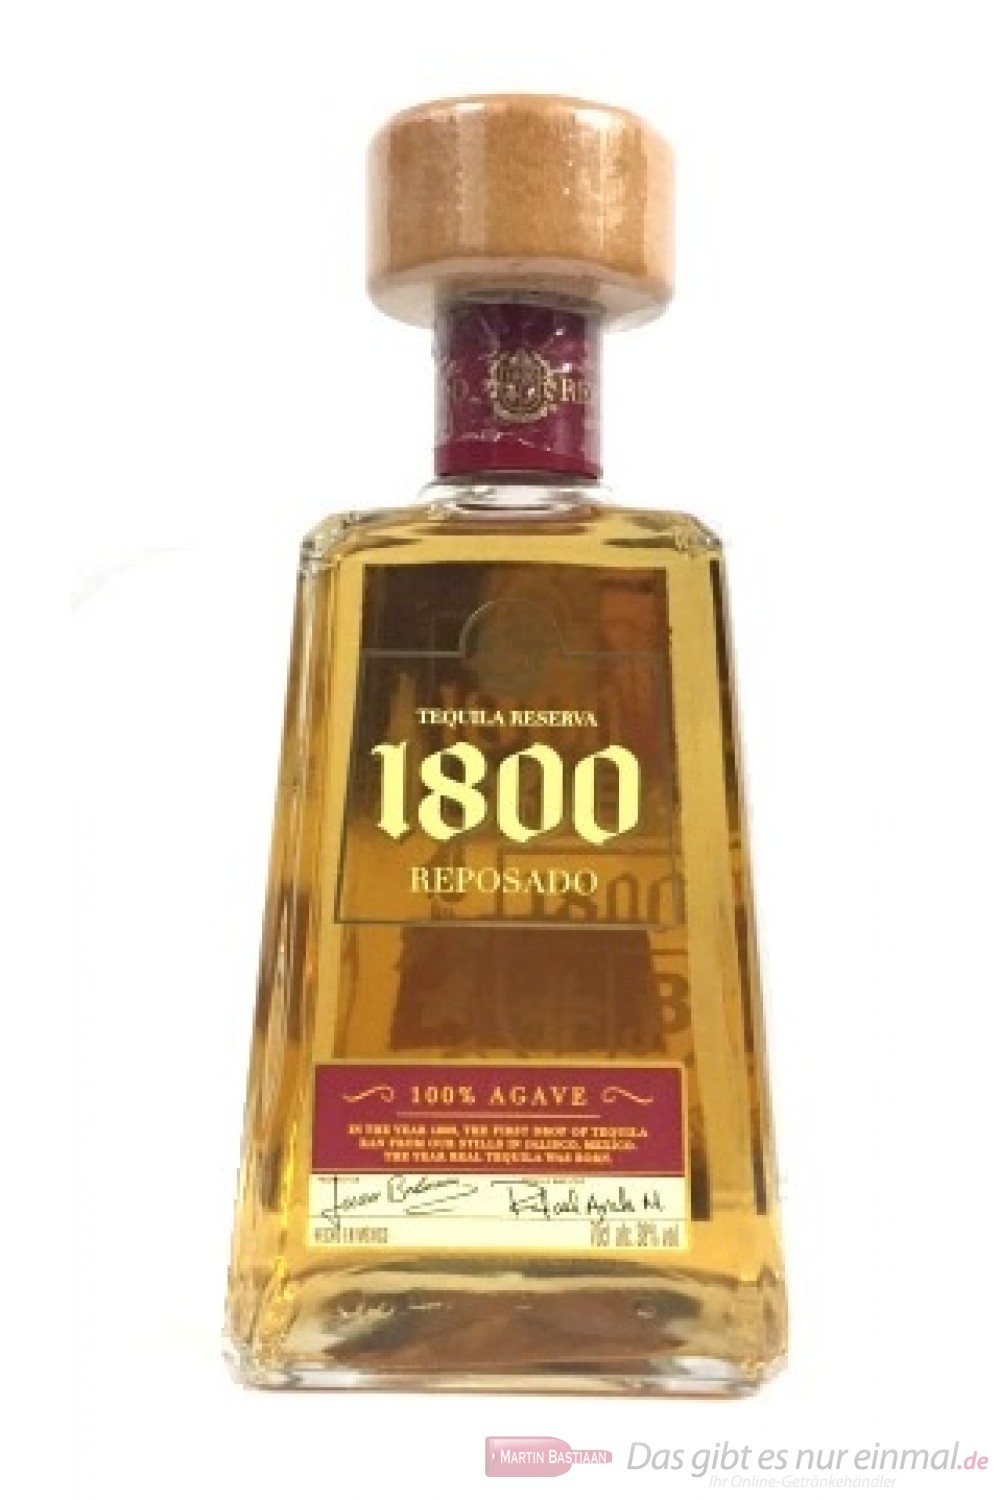 José Cuervo Tequila 1800 Reposado